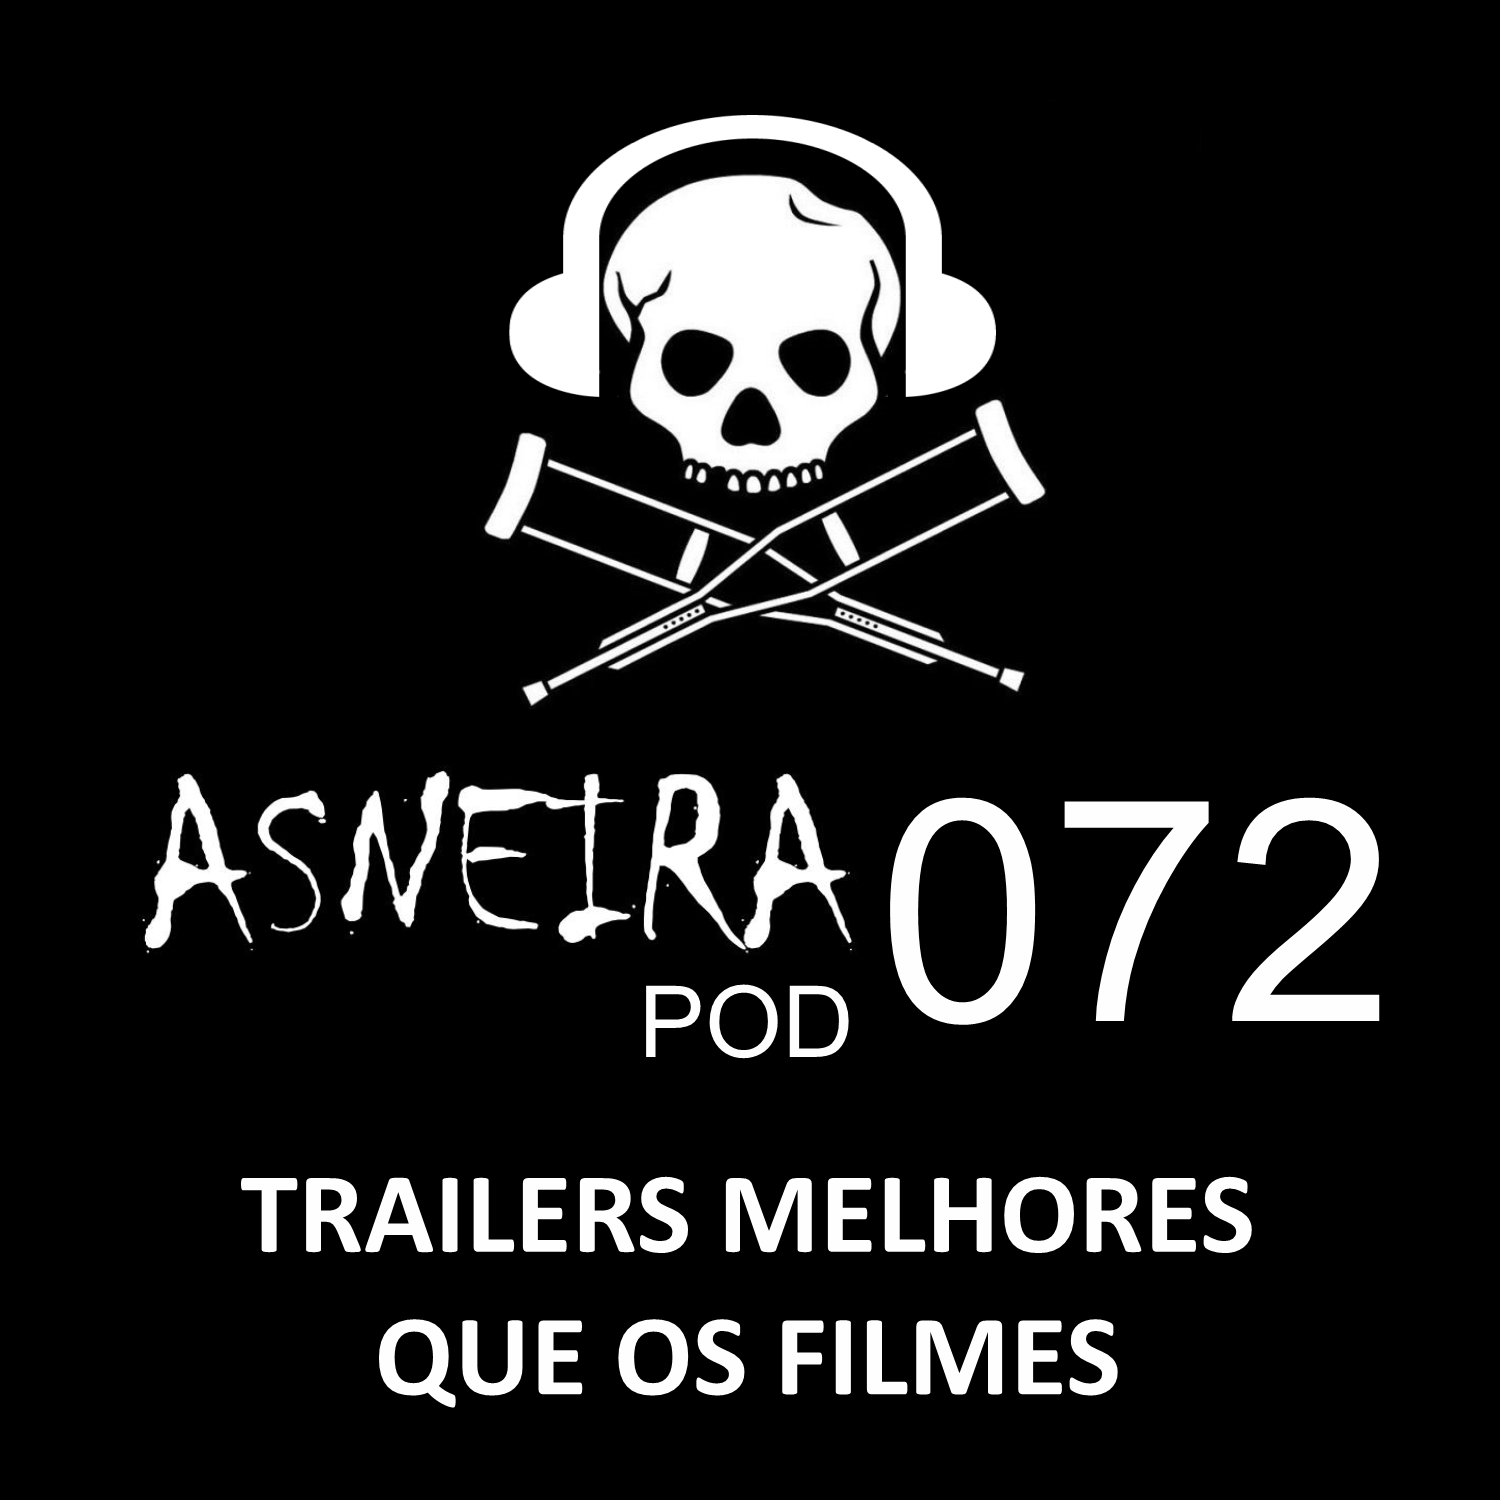 AsneiraPOD 072 – Trailers melhores que os filmes